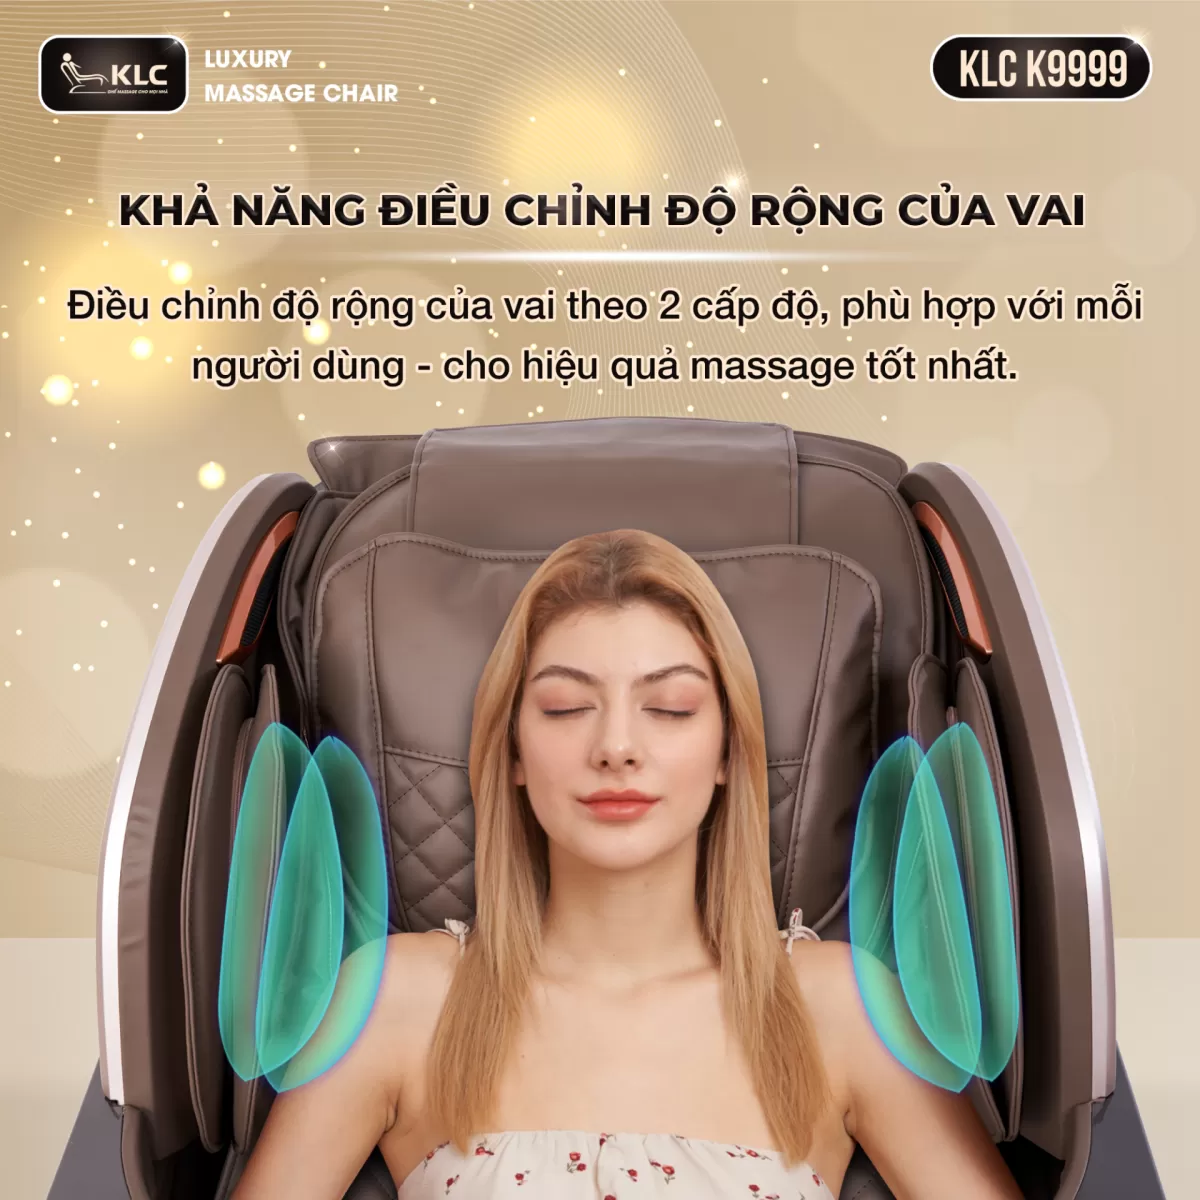 Công nghệ điều chỉnh độ rộng vai của Ghế Massage KLC K9999